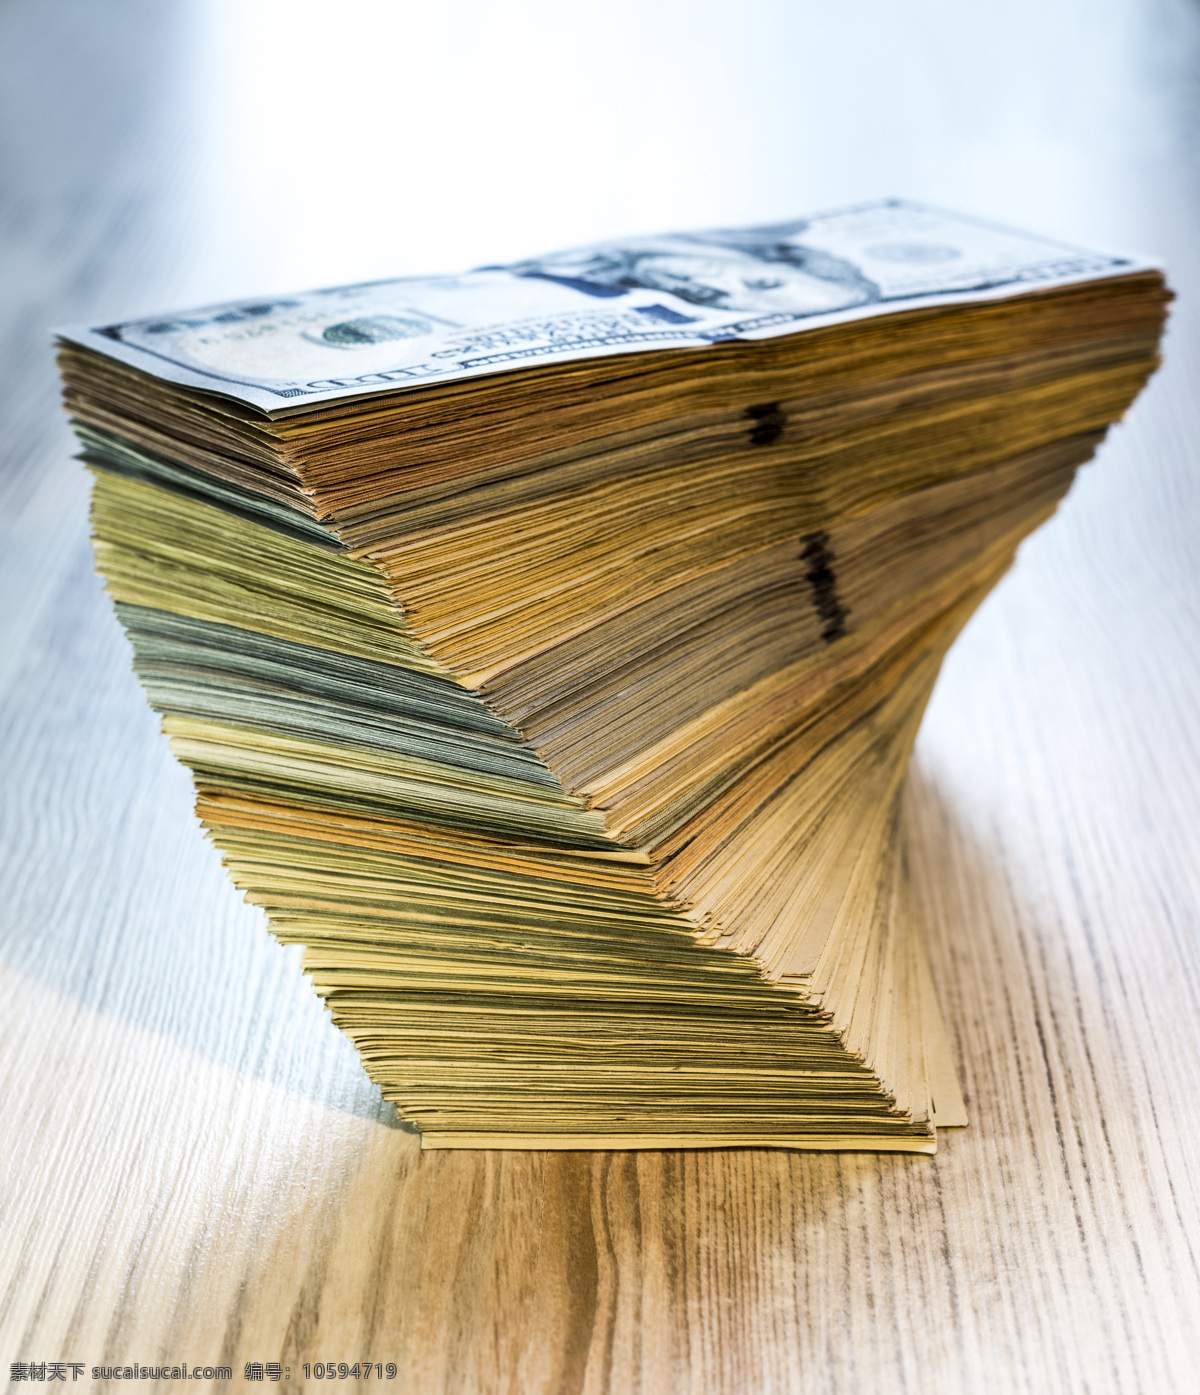 木板 上 美元 木板上的美元 钞票 纸币 钱 金融货币 金融财经 商务金融